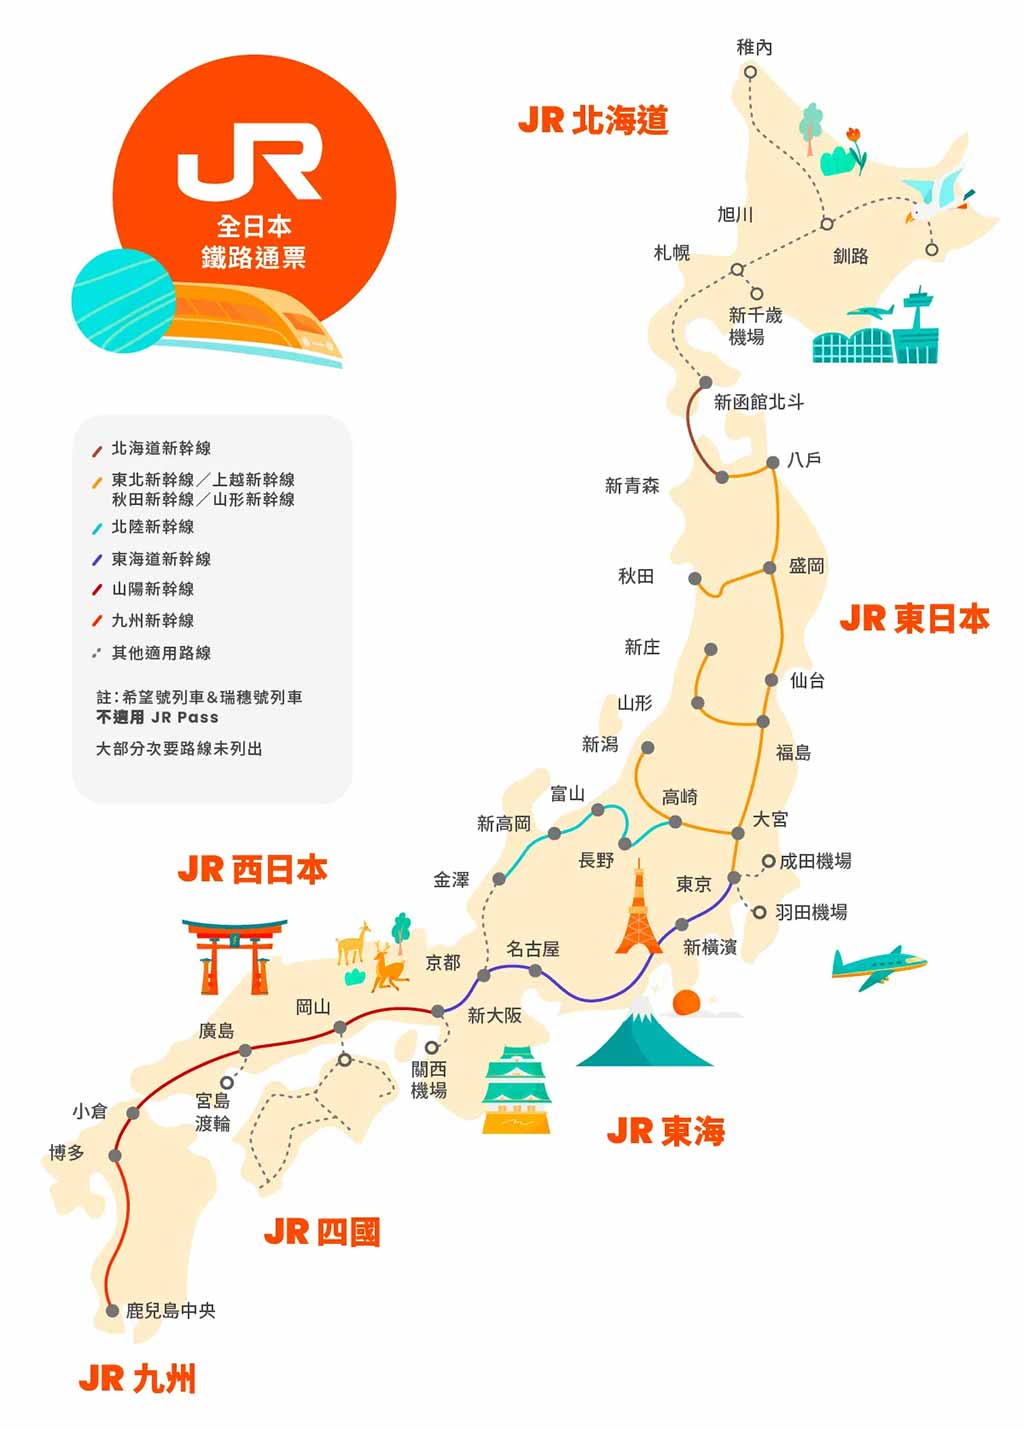 JR全國版日本鐵路通票